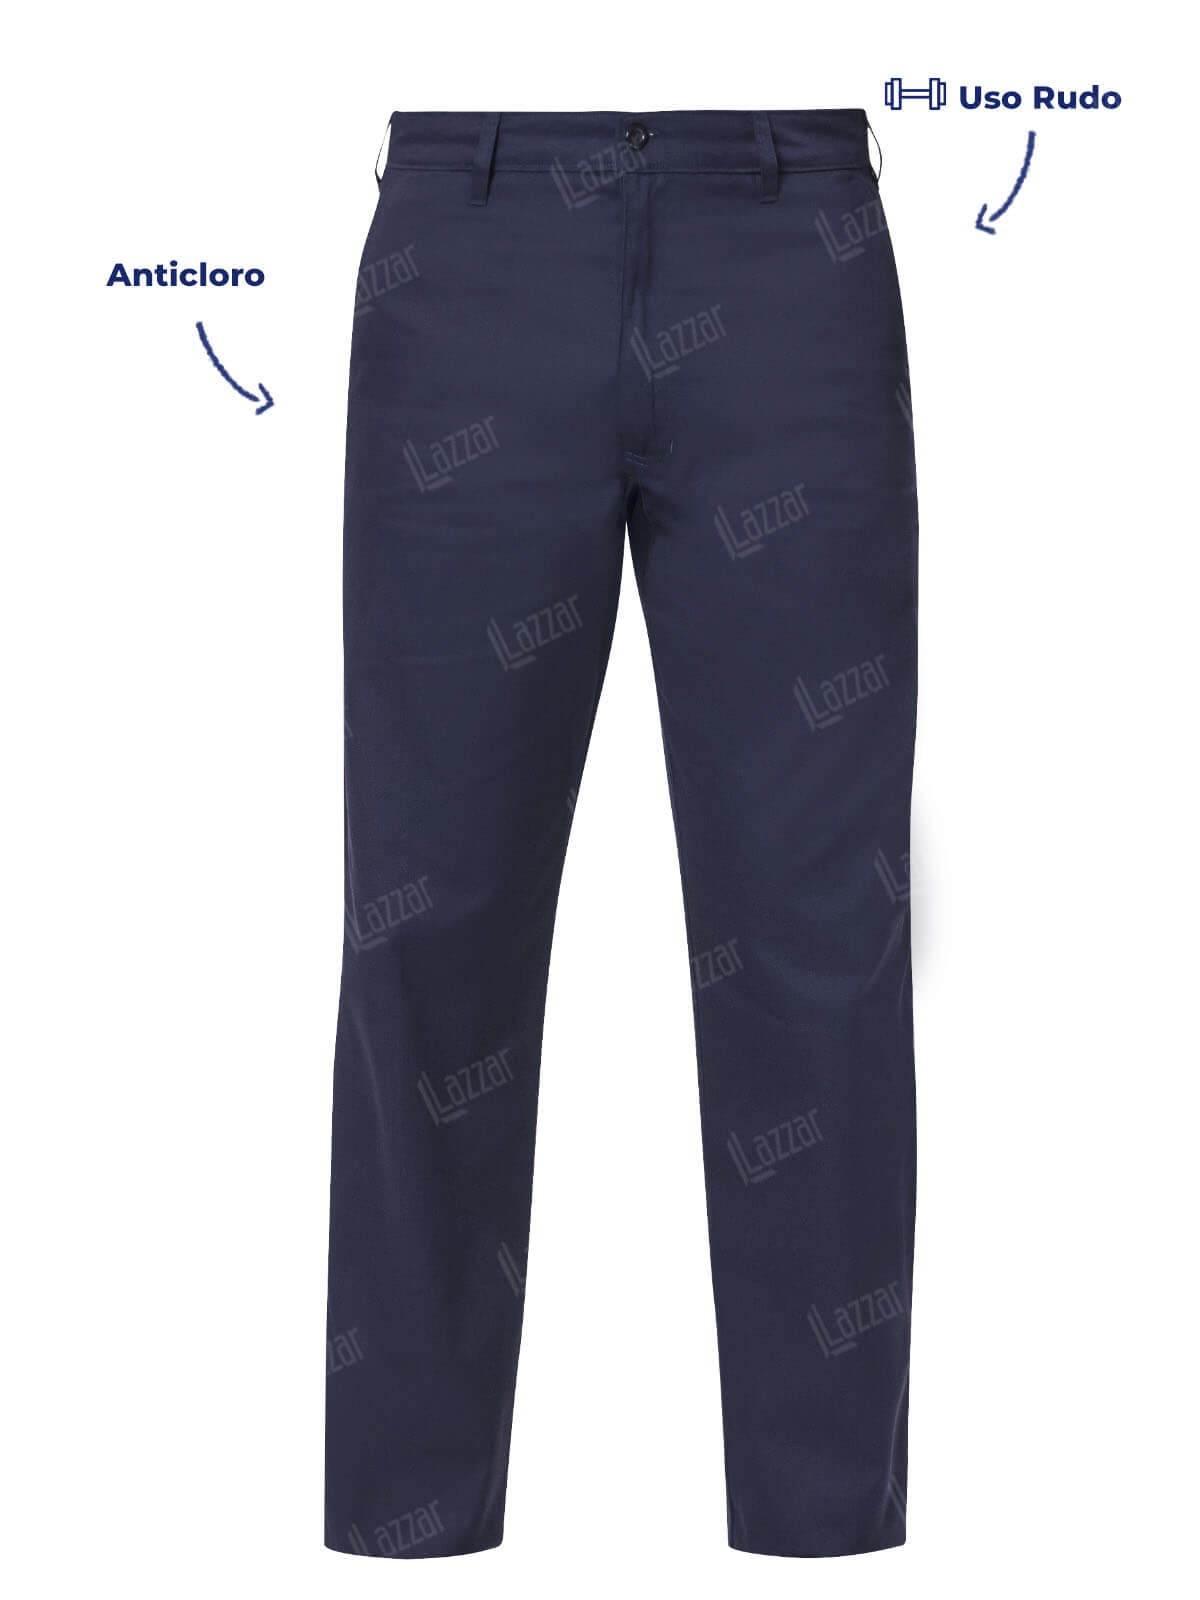 Pantalon de Gabardina color azul marino